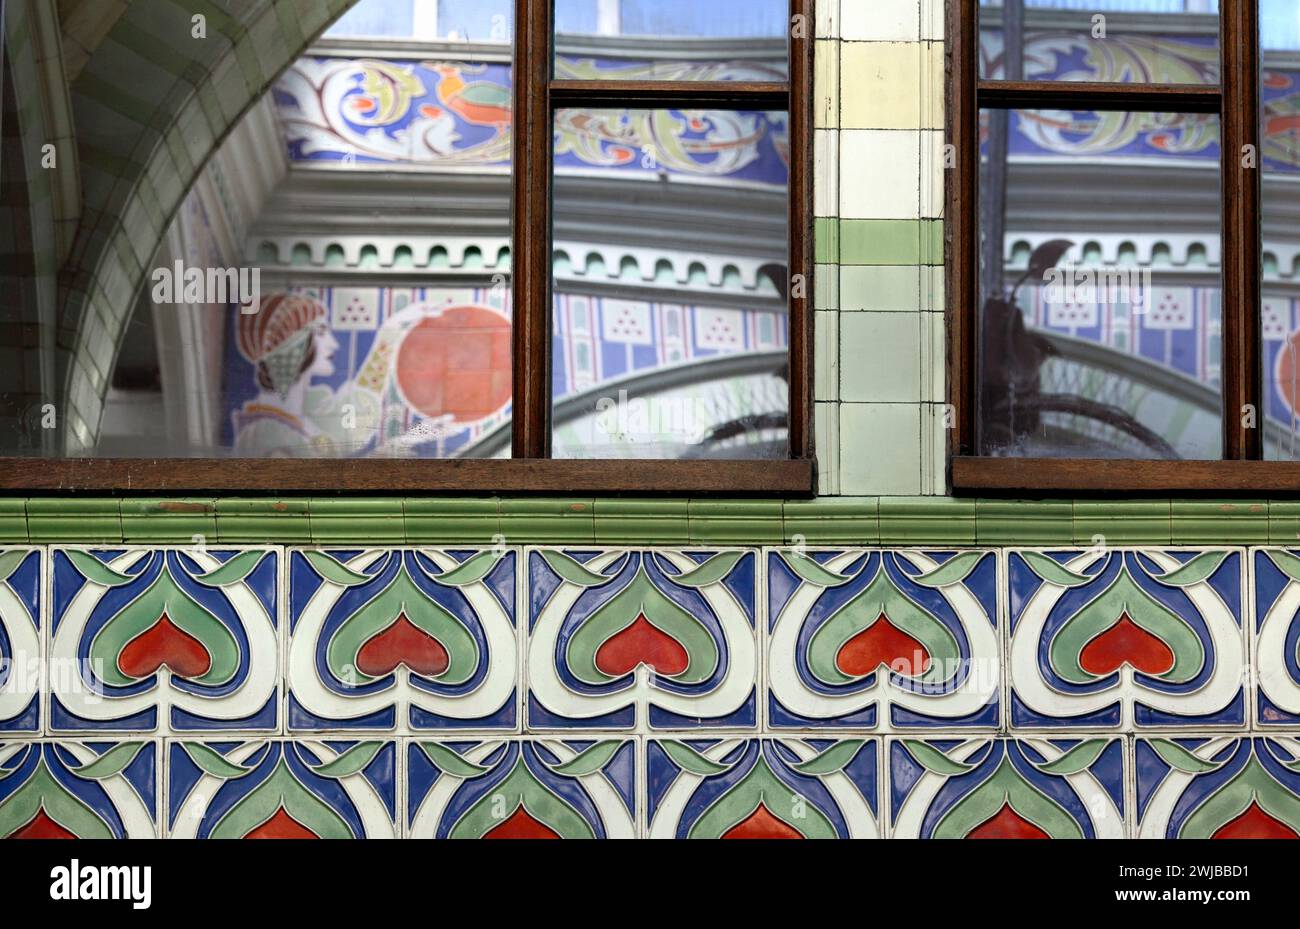 Primo piano della decorazione art nouveau all'interno della Royal Arcade di Norwich. Le finestre a specchio riflettono più disegni sulla parete opposta. Foto Stock